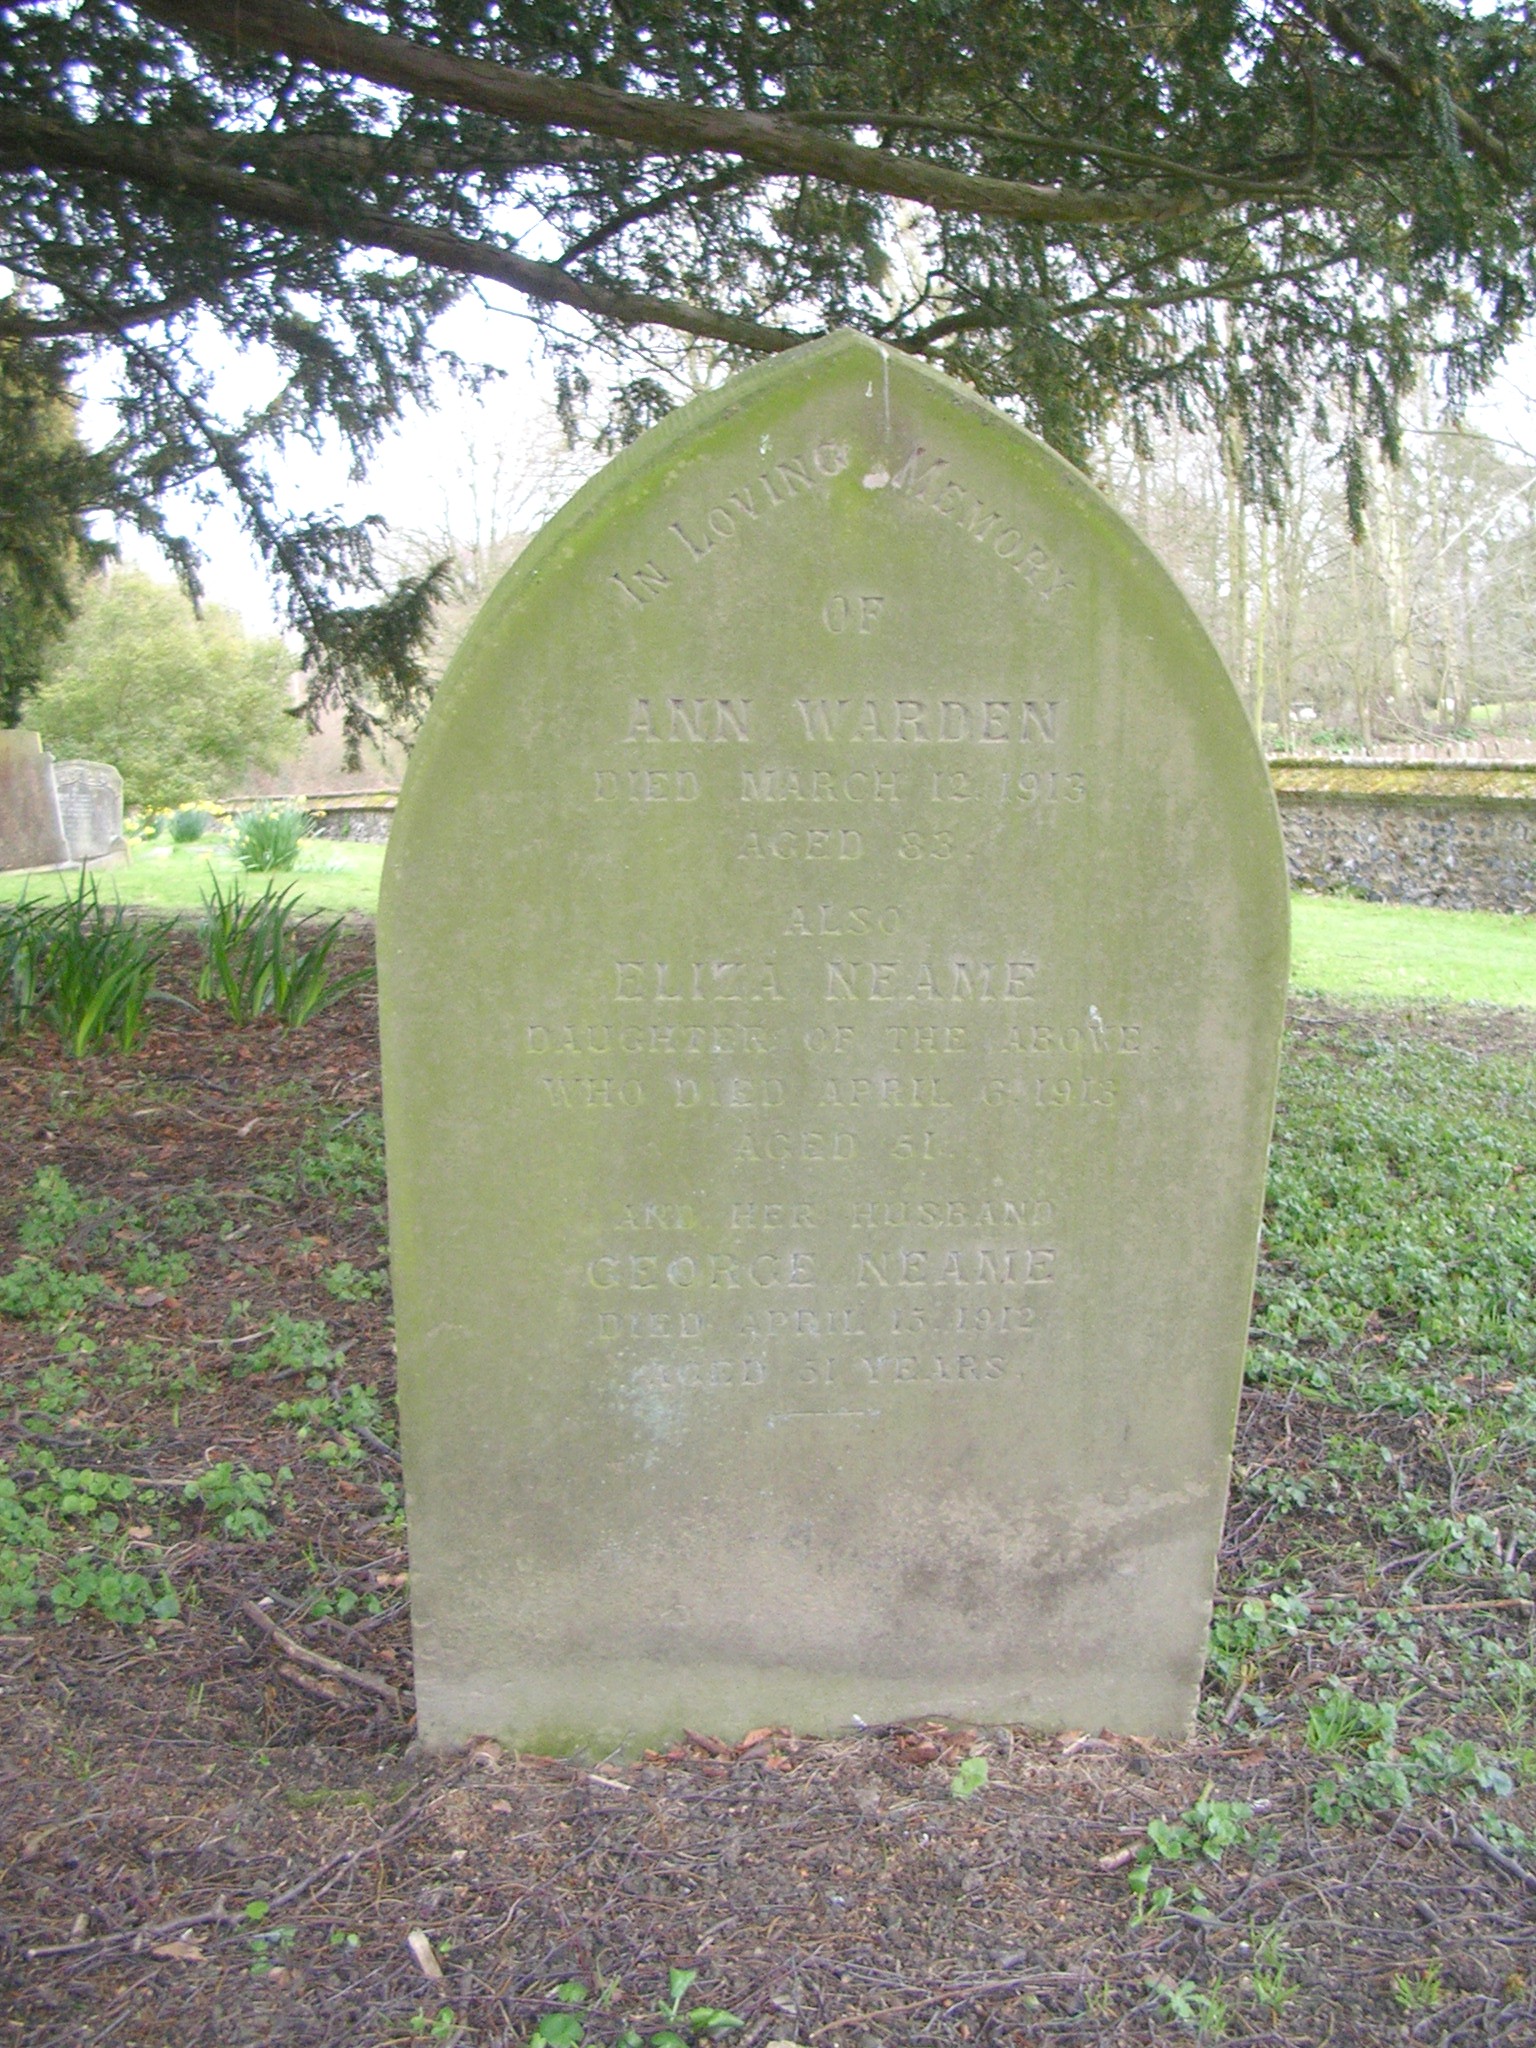 Eliza Neame Grave